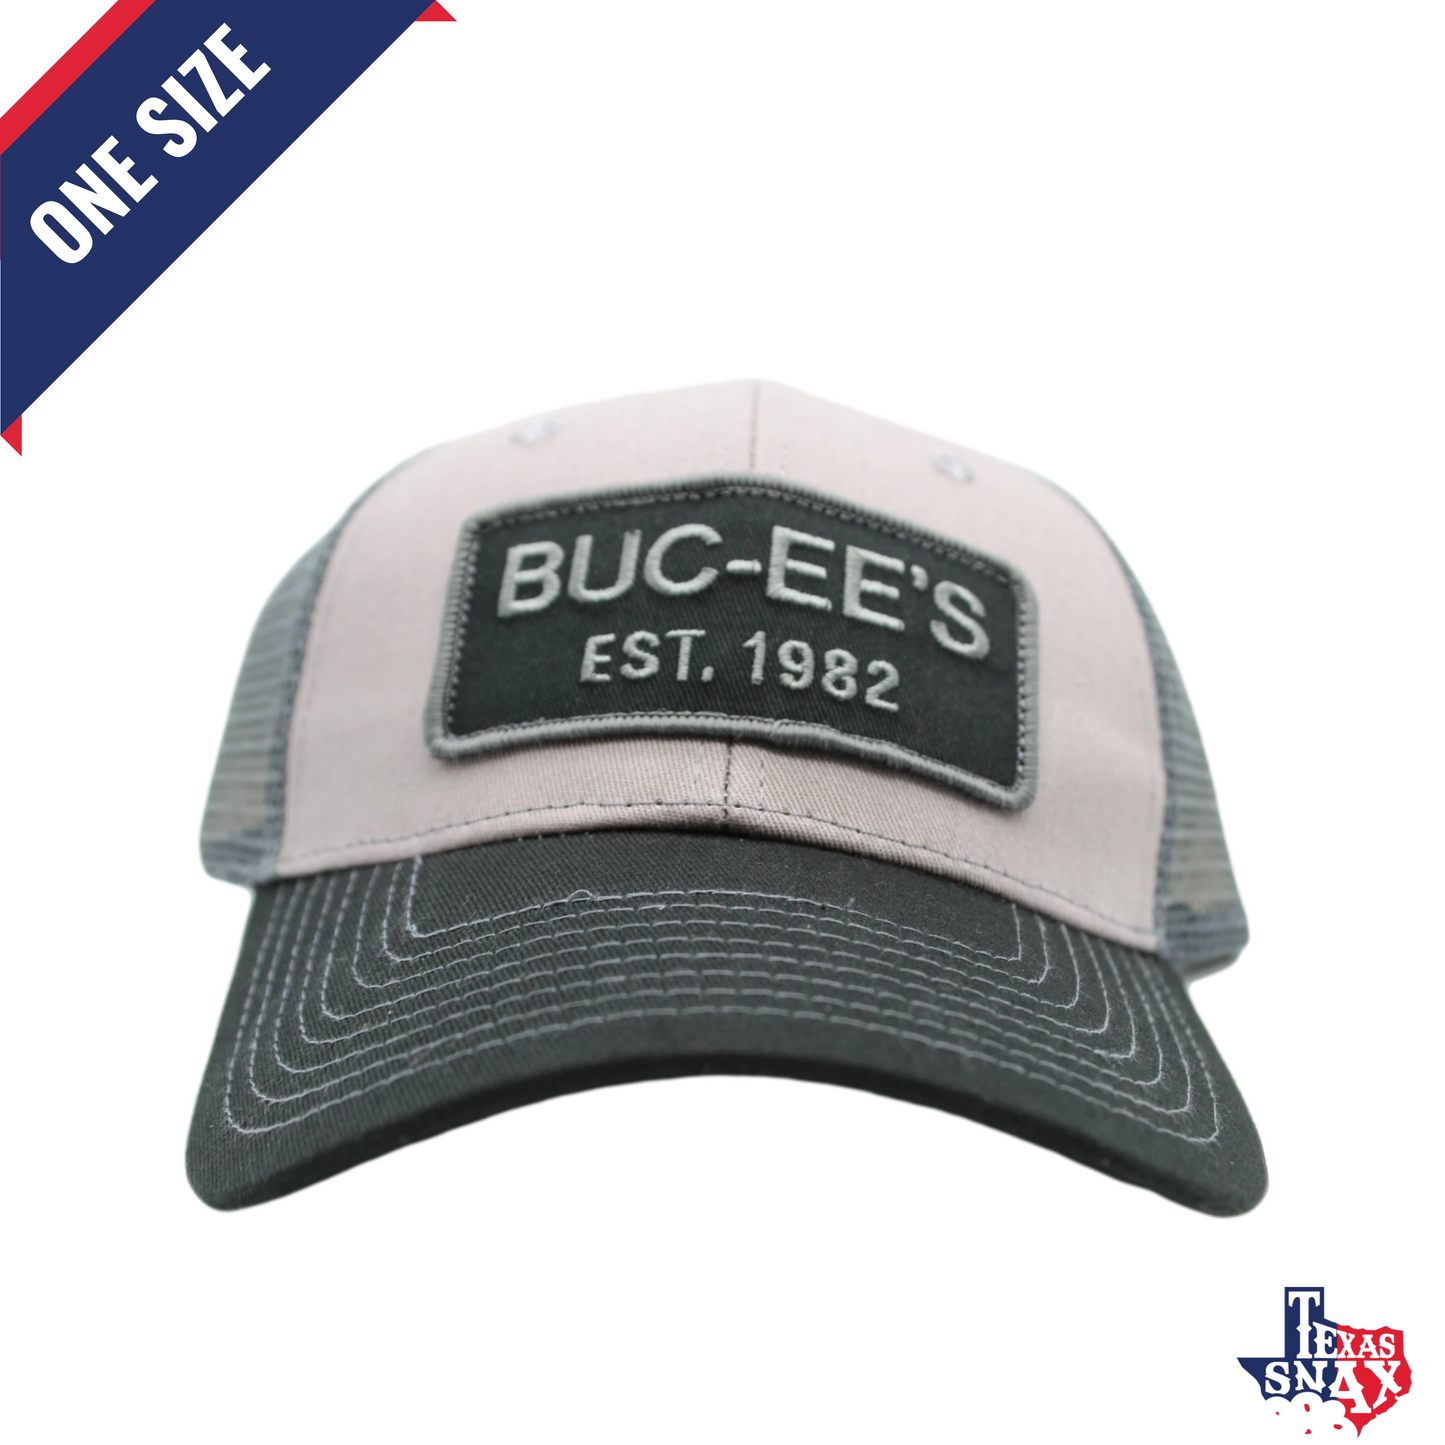 Buc-ee's Trucker Patch Hats